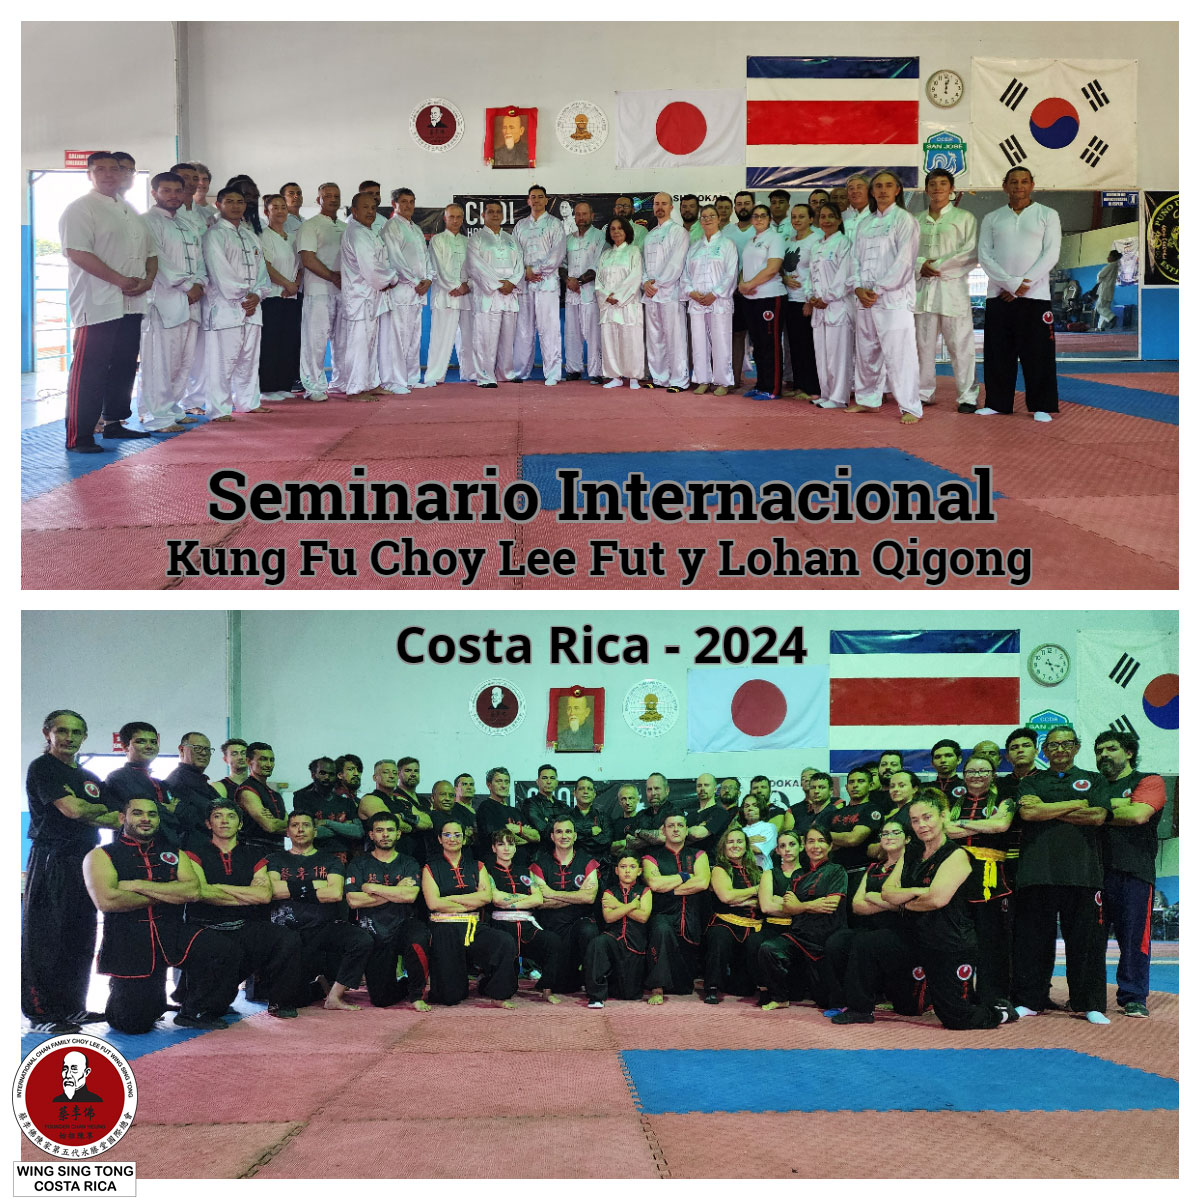 Seminario Internacional de Choy Lee Fut Kung Fu y Lohan Qigong - Costa Rica 2024